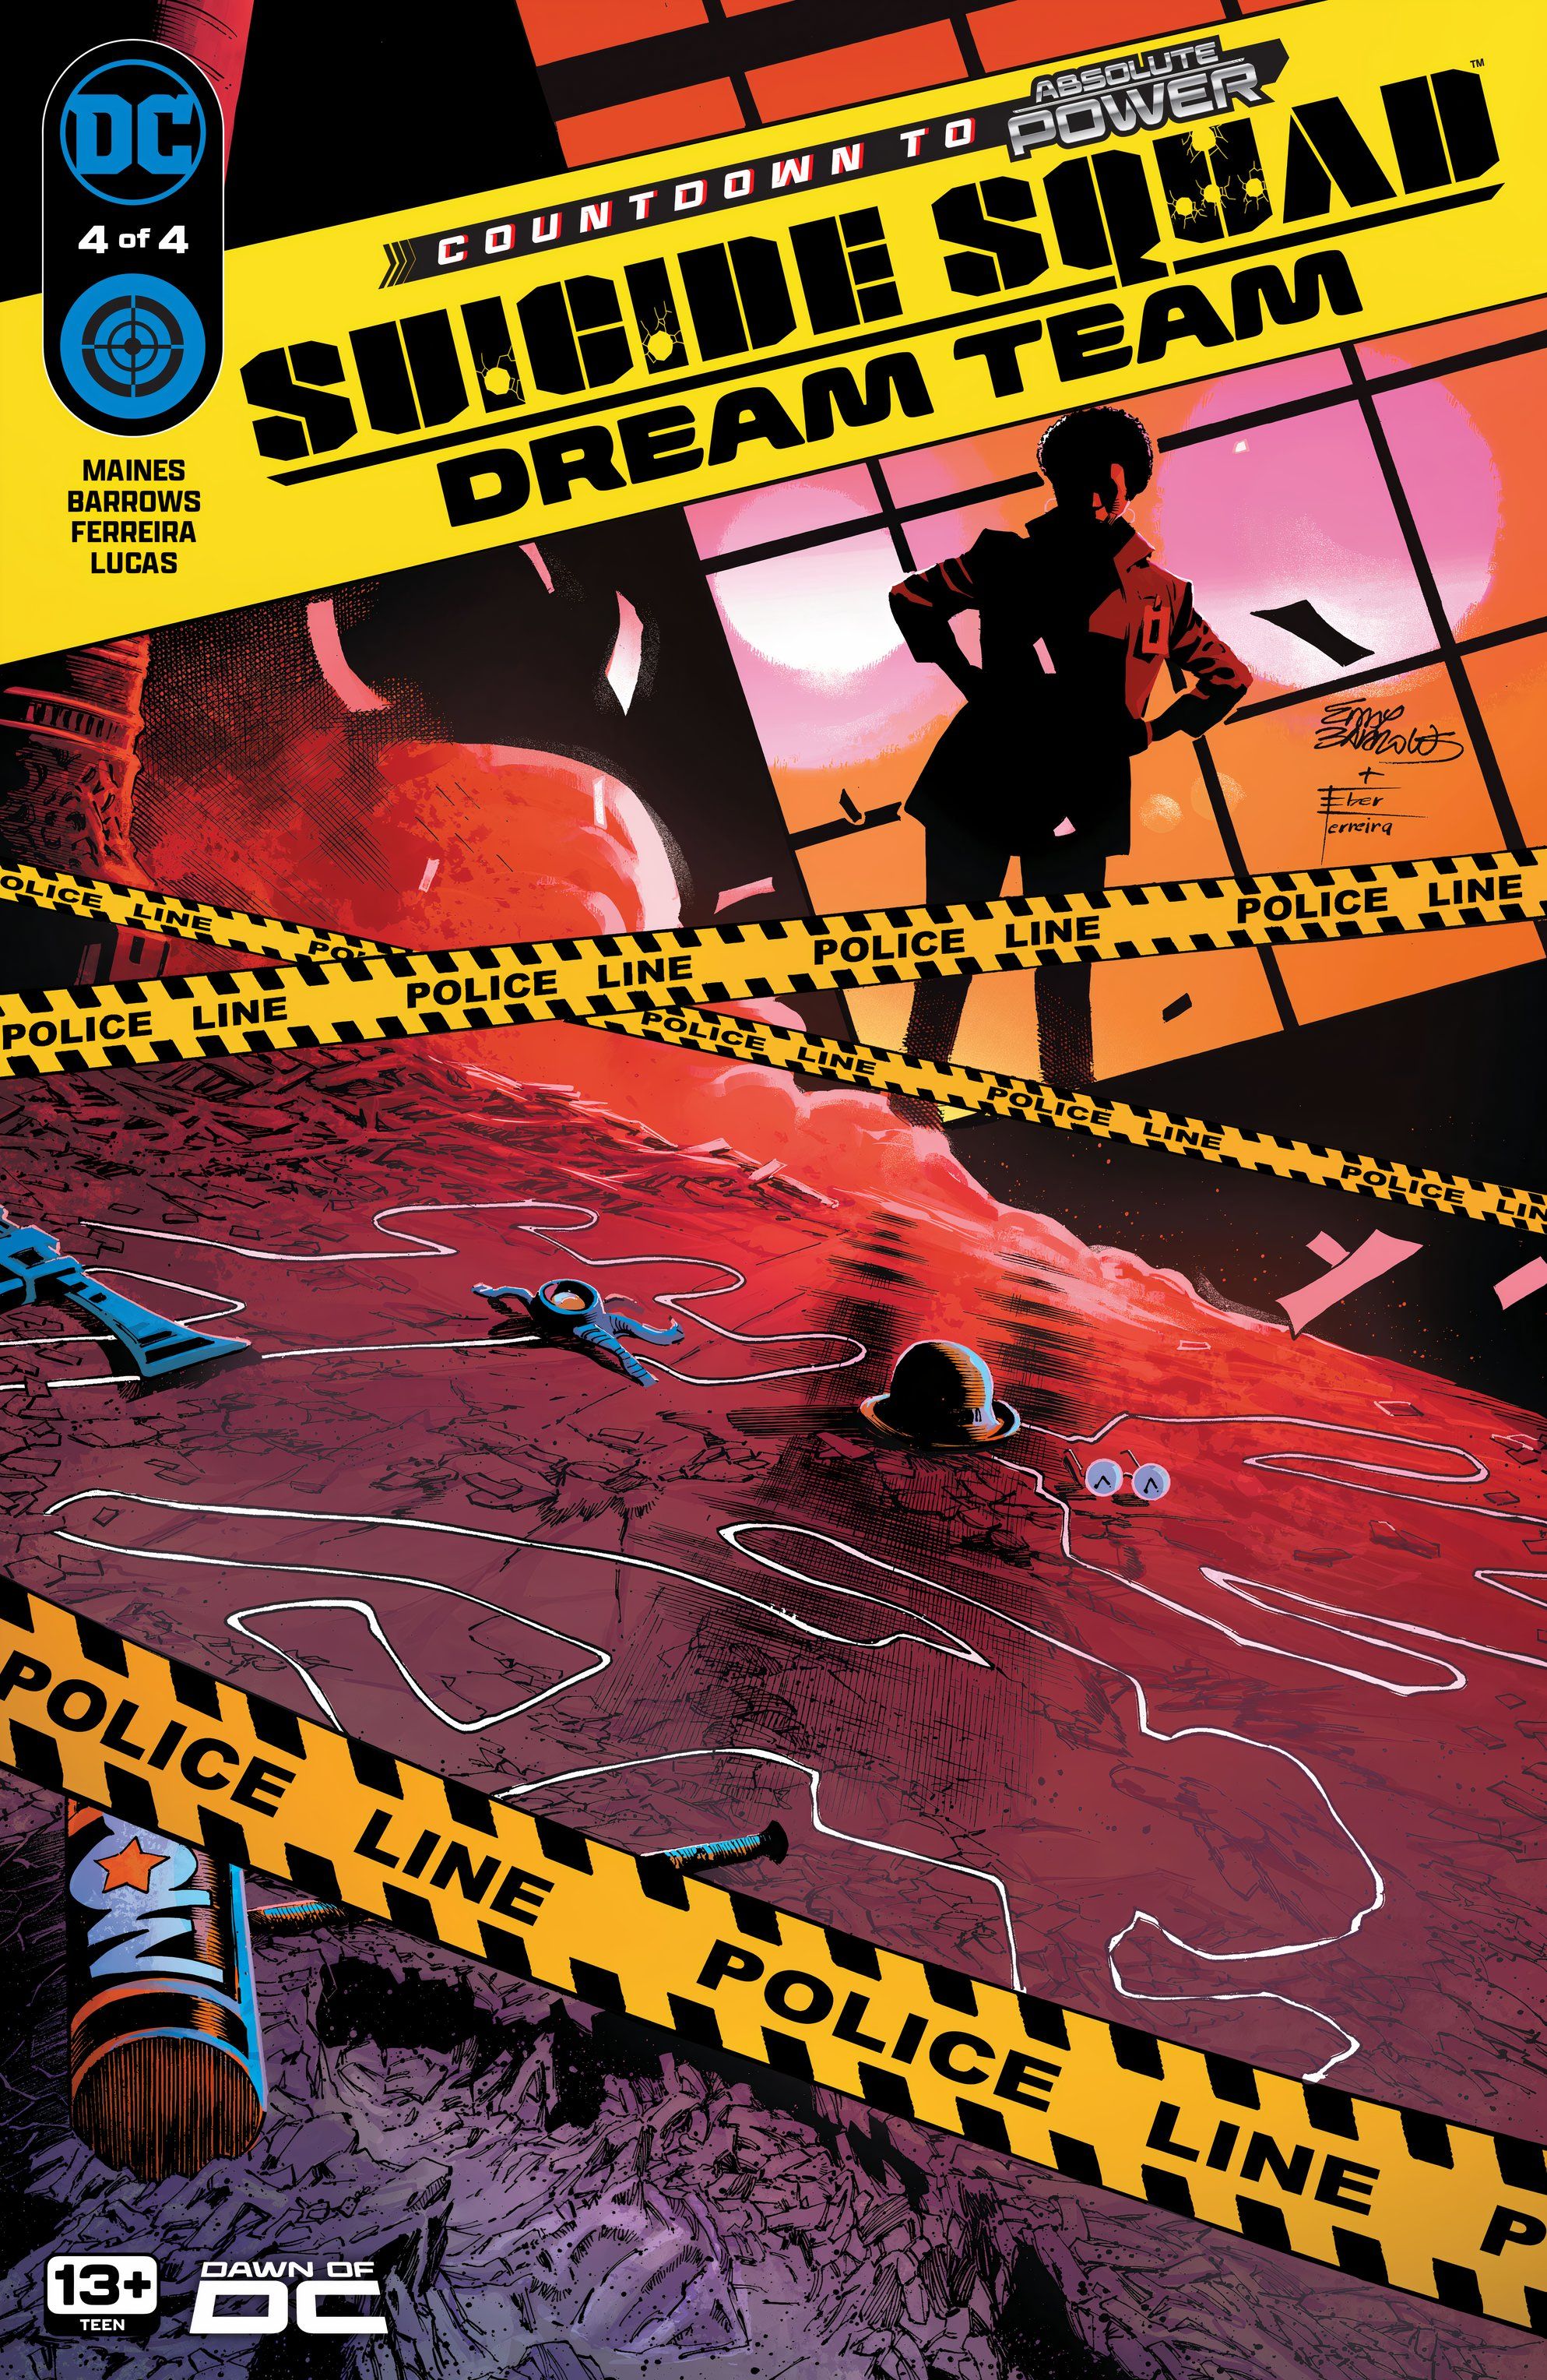 Legion samobójców Dream Team 4 Okładka główna: Amanda Waller przygląda się dowodom na miejscu zbrodni za pomocą policyjnej taśmy.